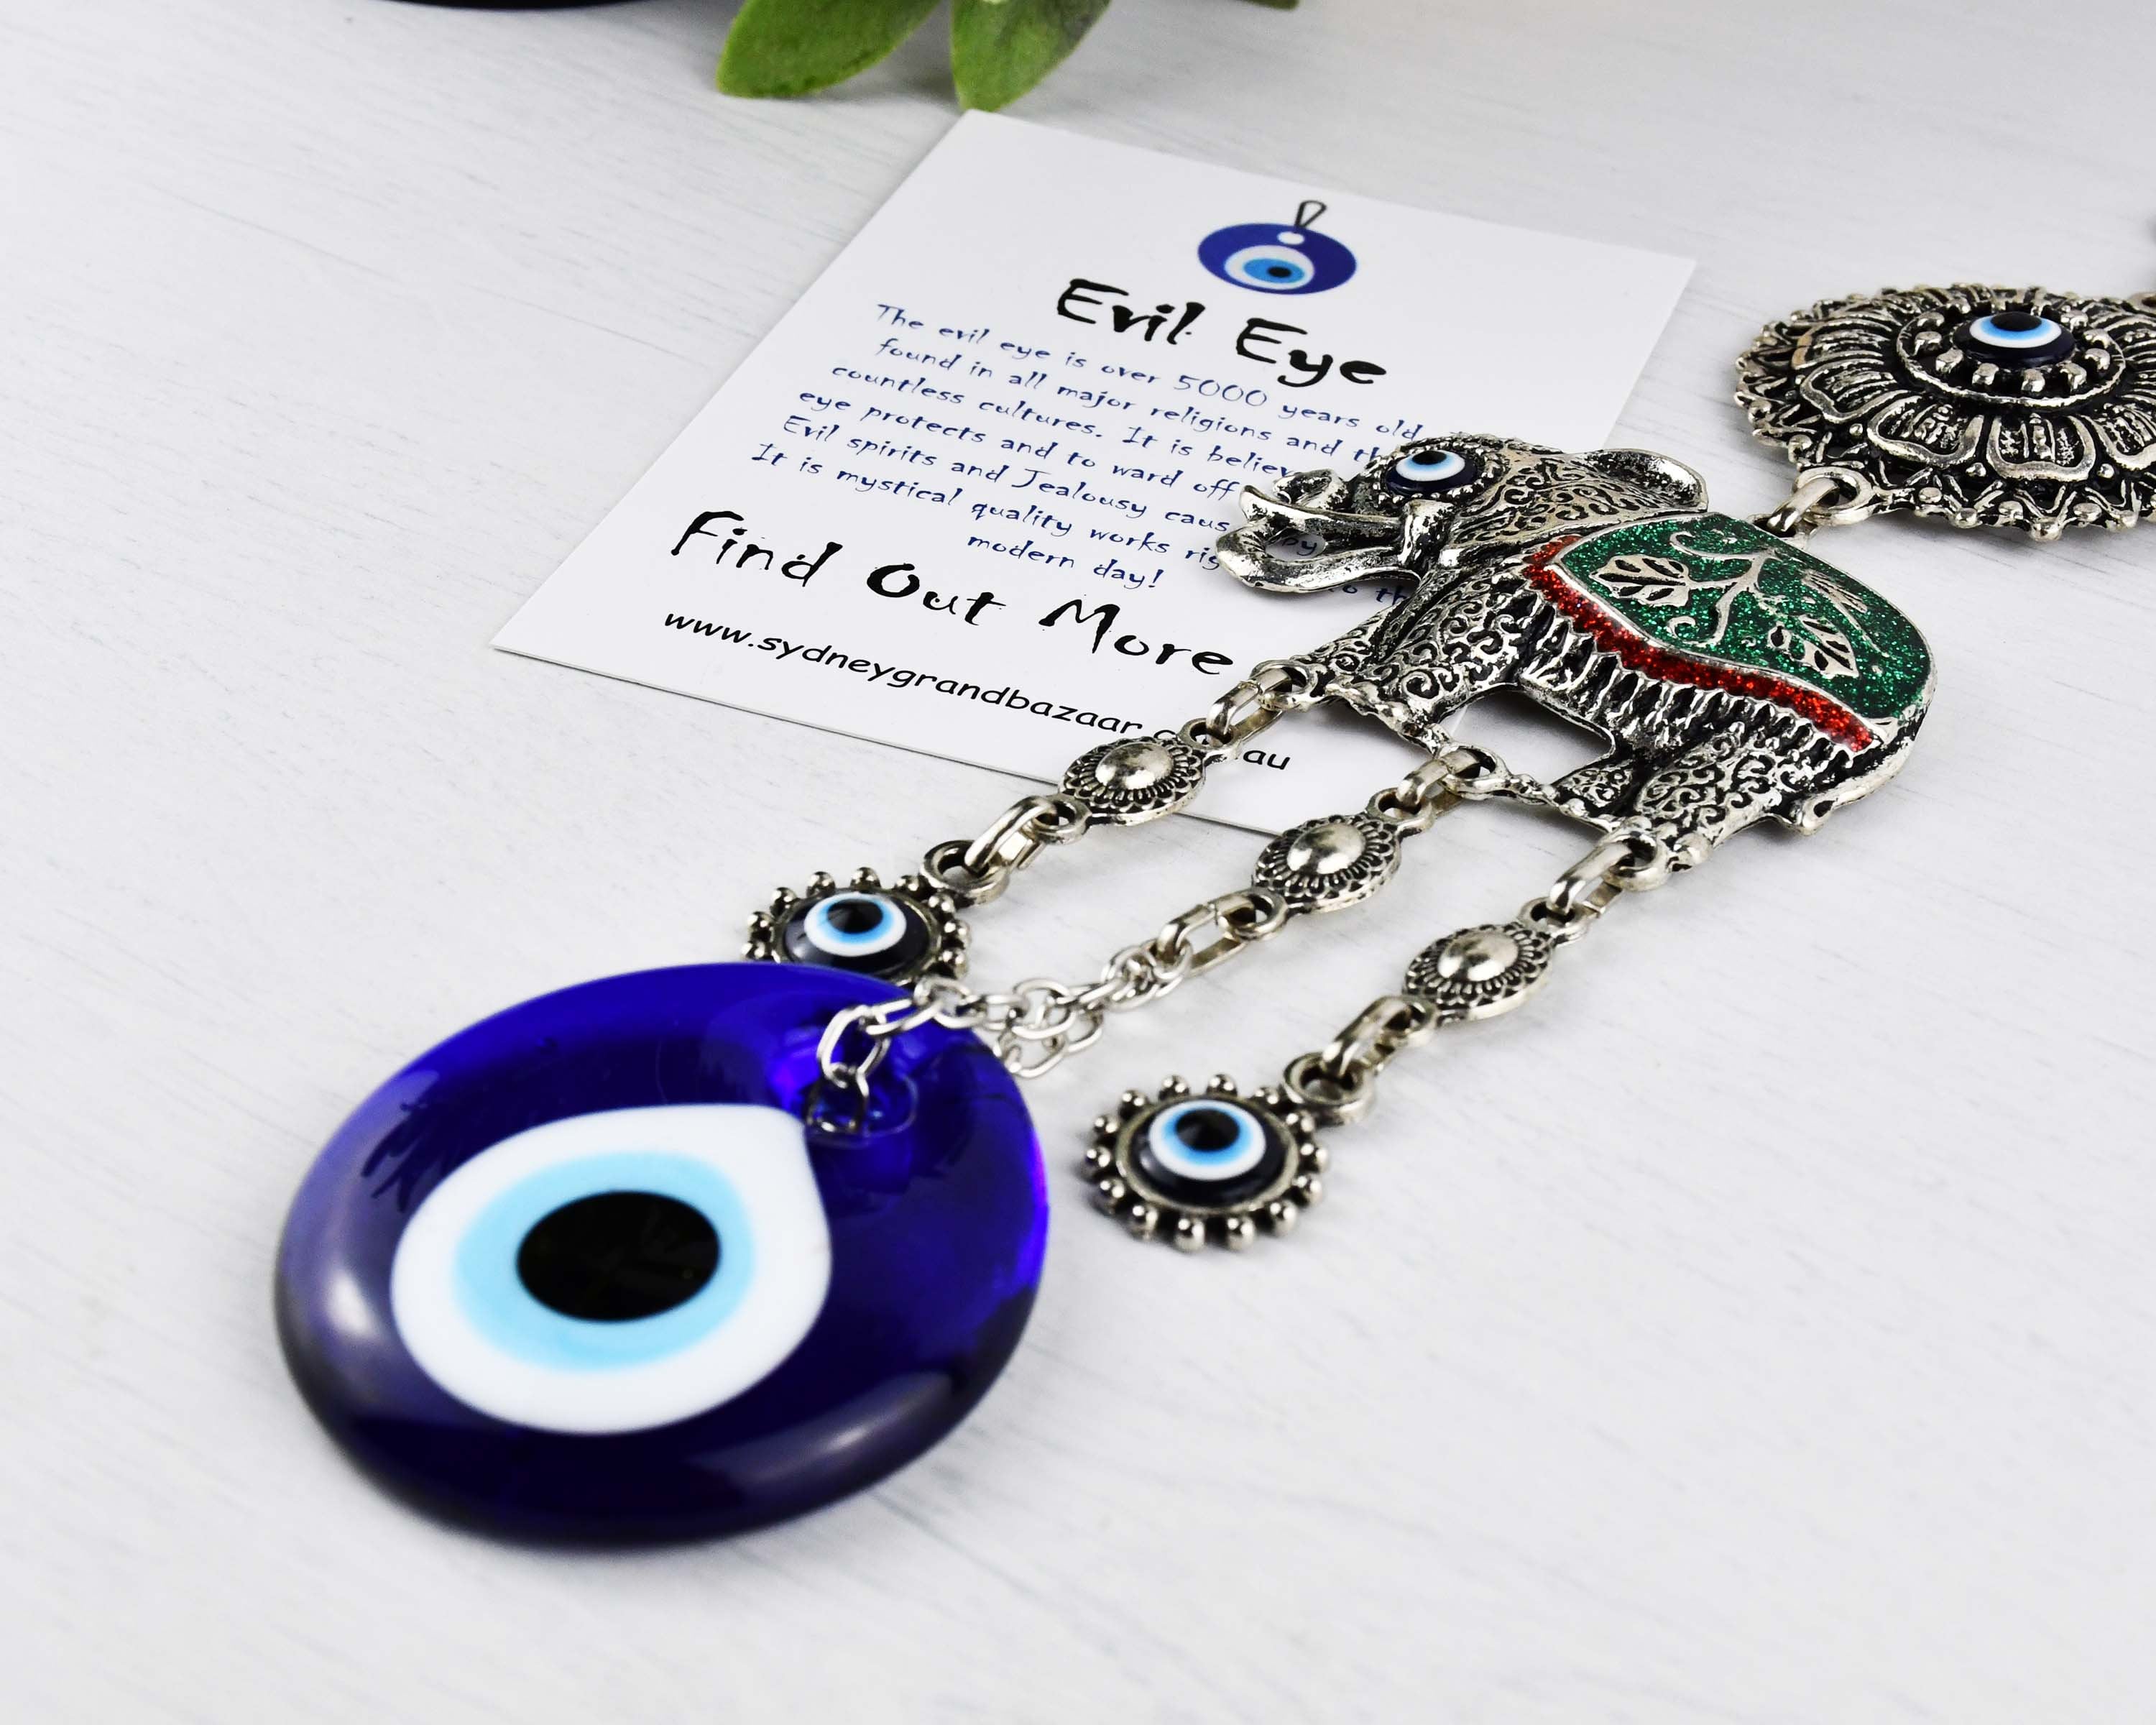 Böses Augenschutzschild. Türkisches Amulett. Durchsichtiges islamisches,  arabisches oder türkisches Amulett aus Glas. Fatima-Auge. Vektordarstellung  Stock-Vektorgrafik - Alamy